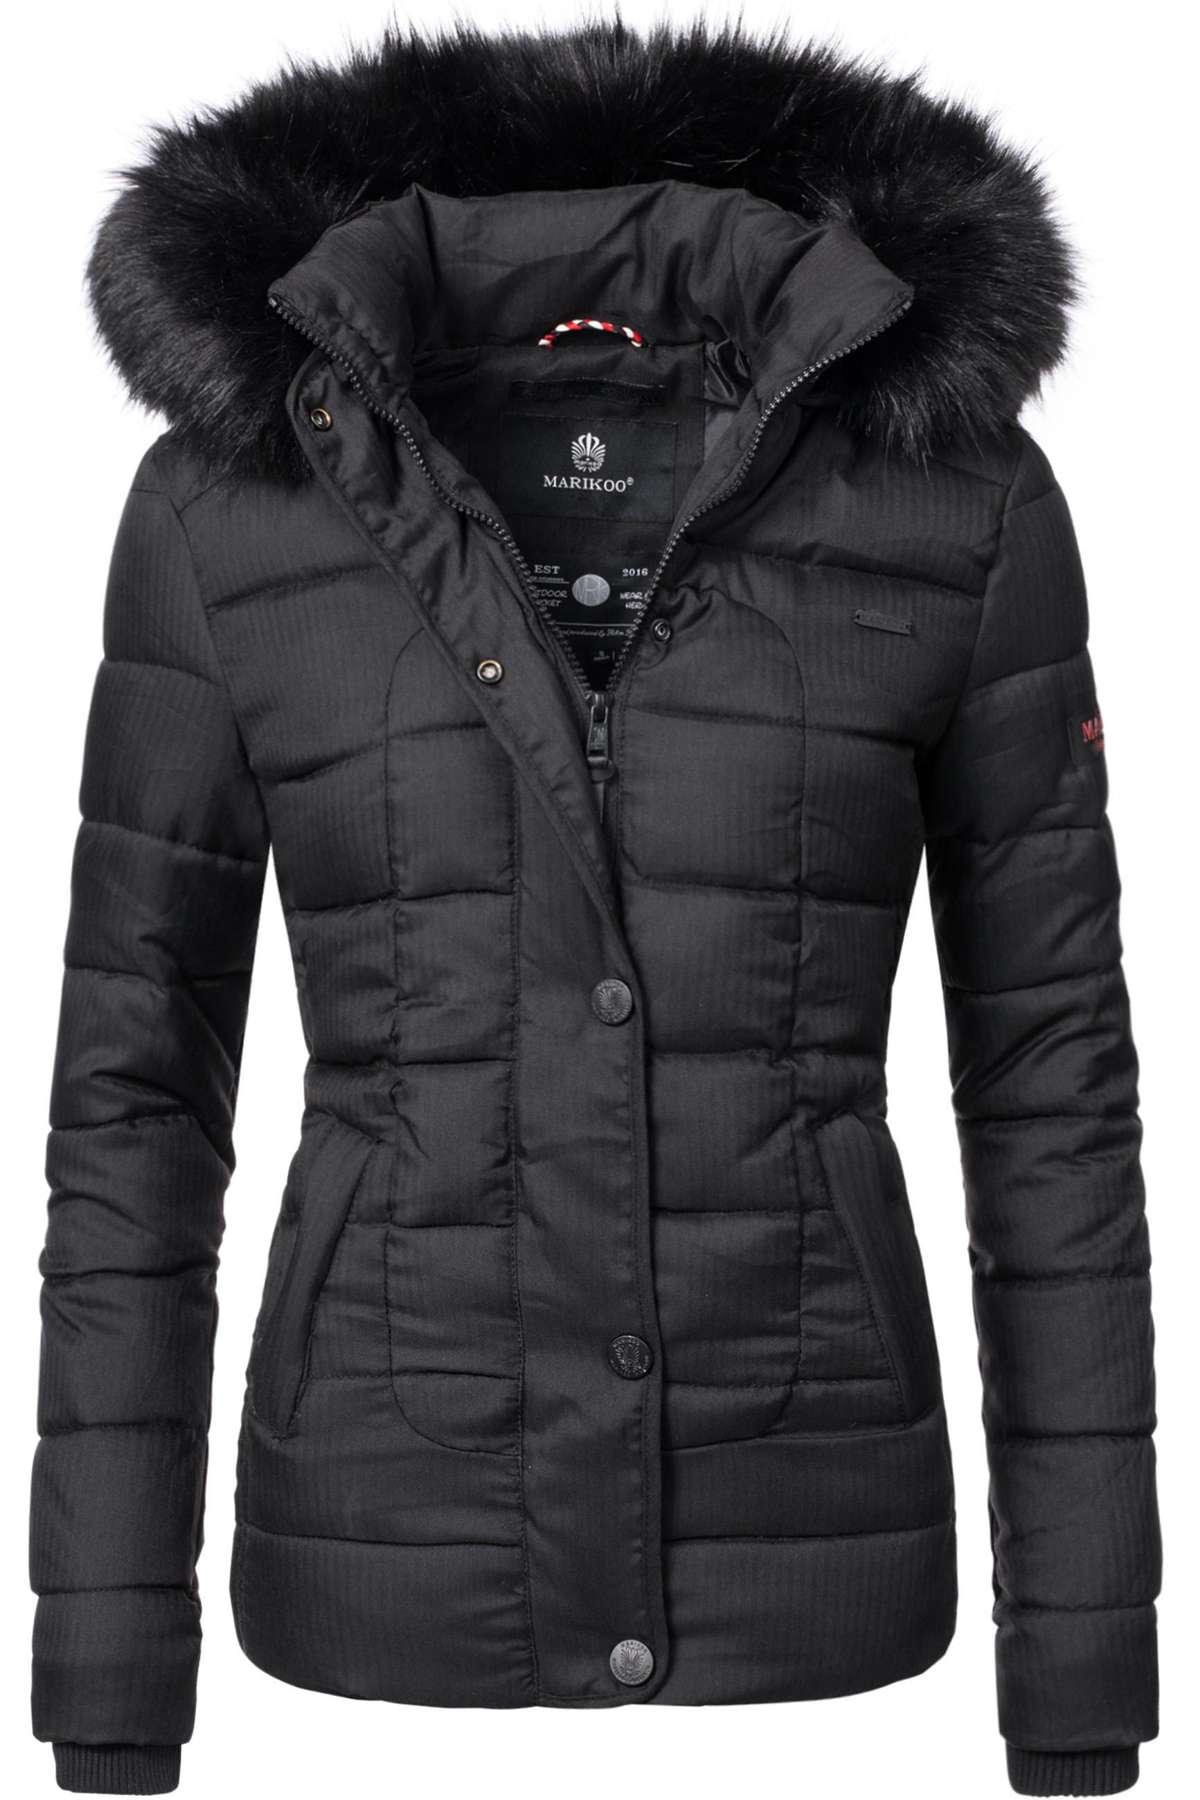 Стеганая куртка с капюшоном, модная зимняя куртка с капюшоном из искусственного меха